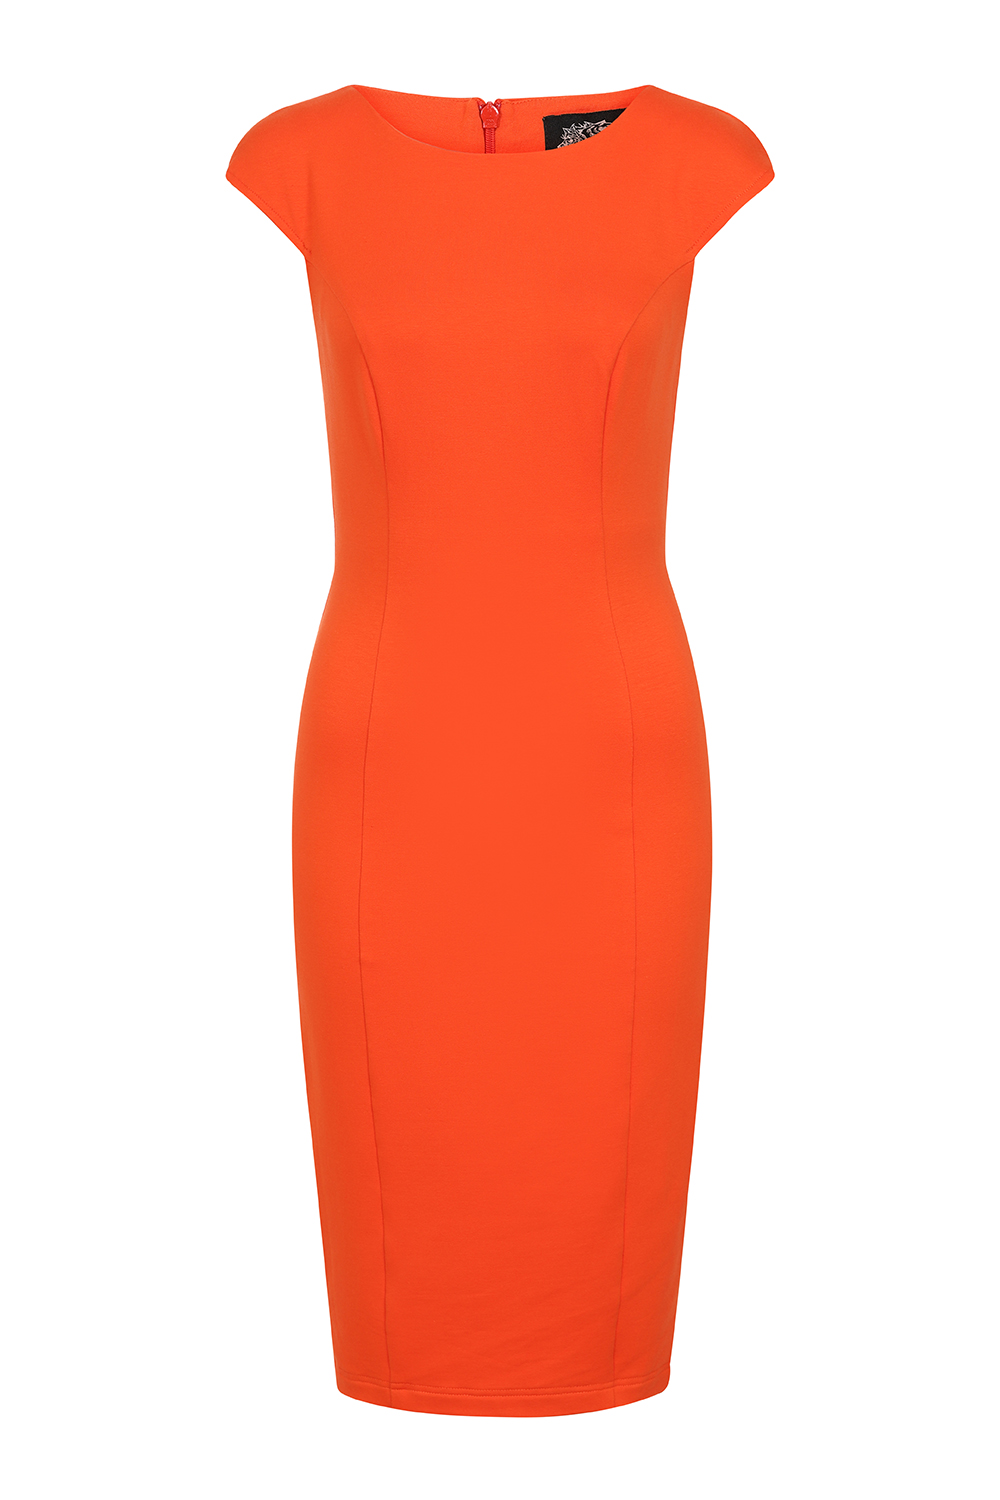 April Orange Wiggle Dress